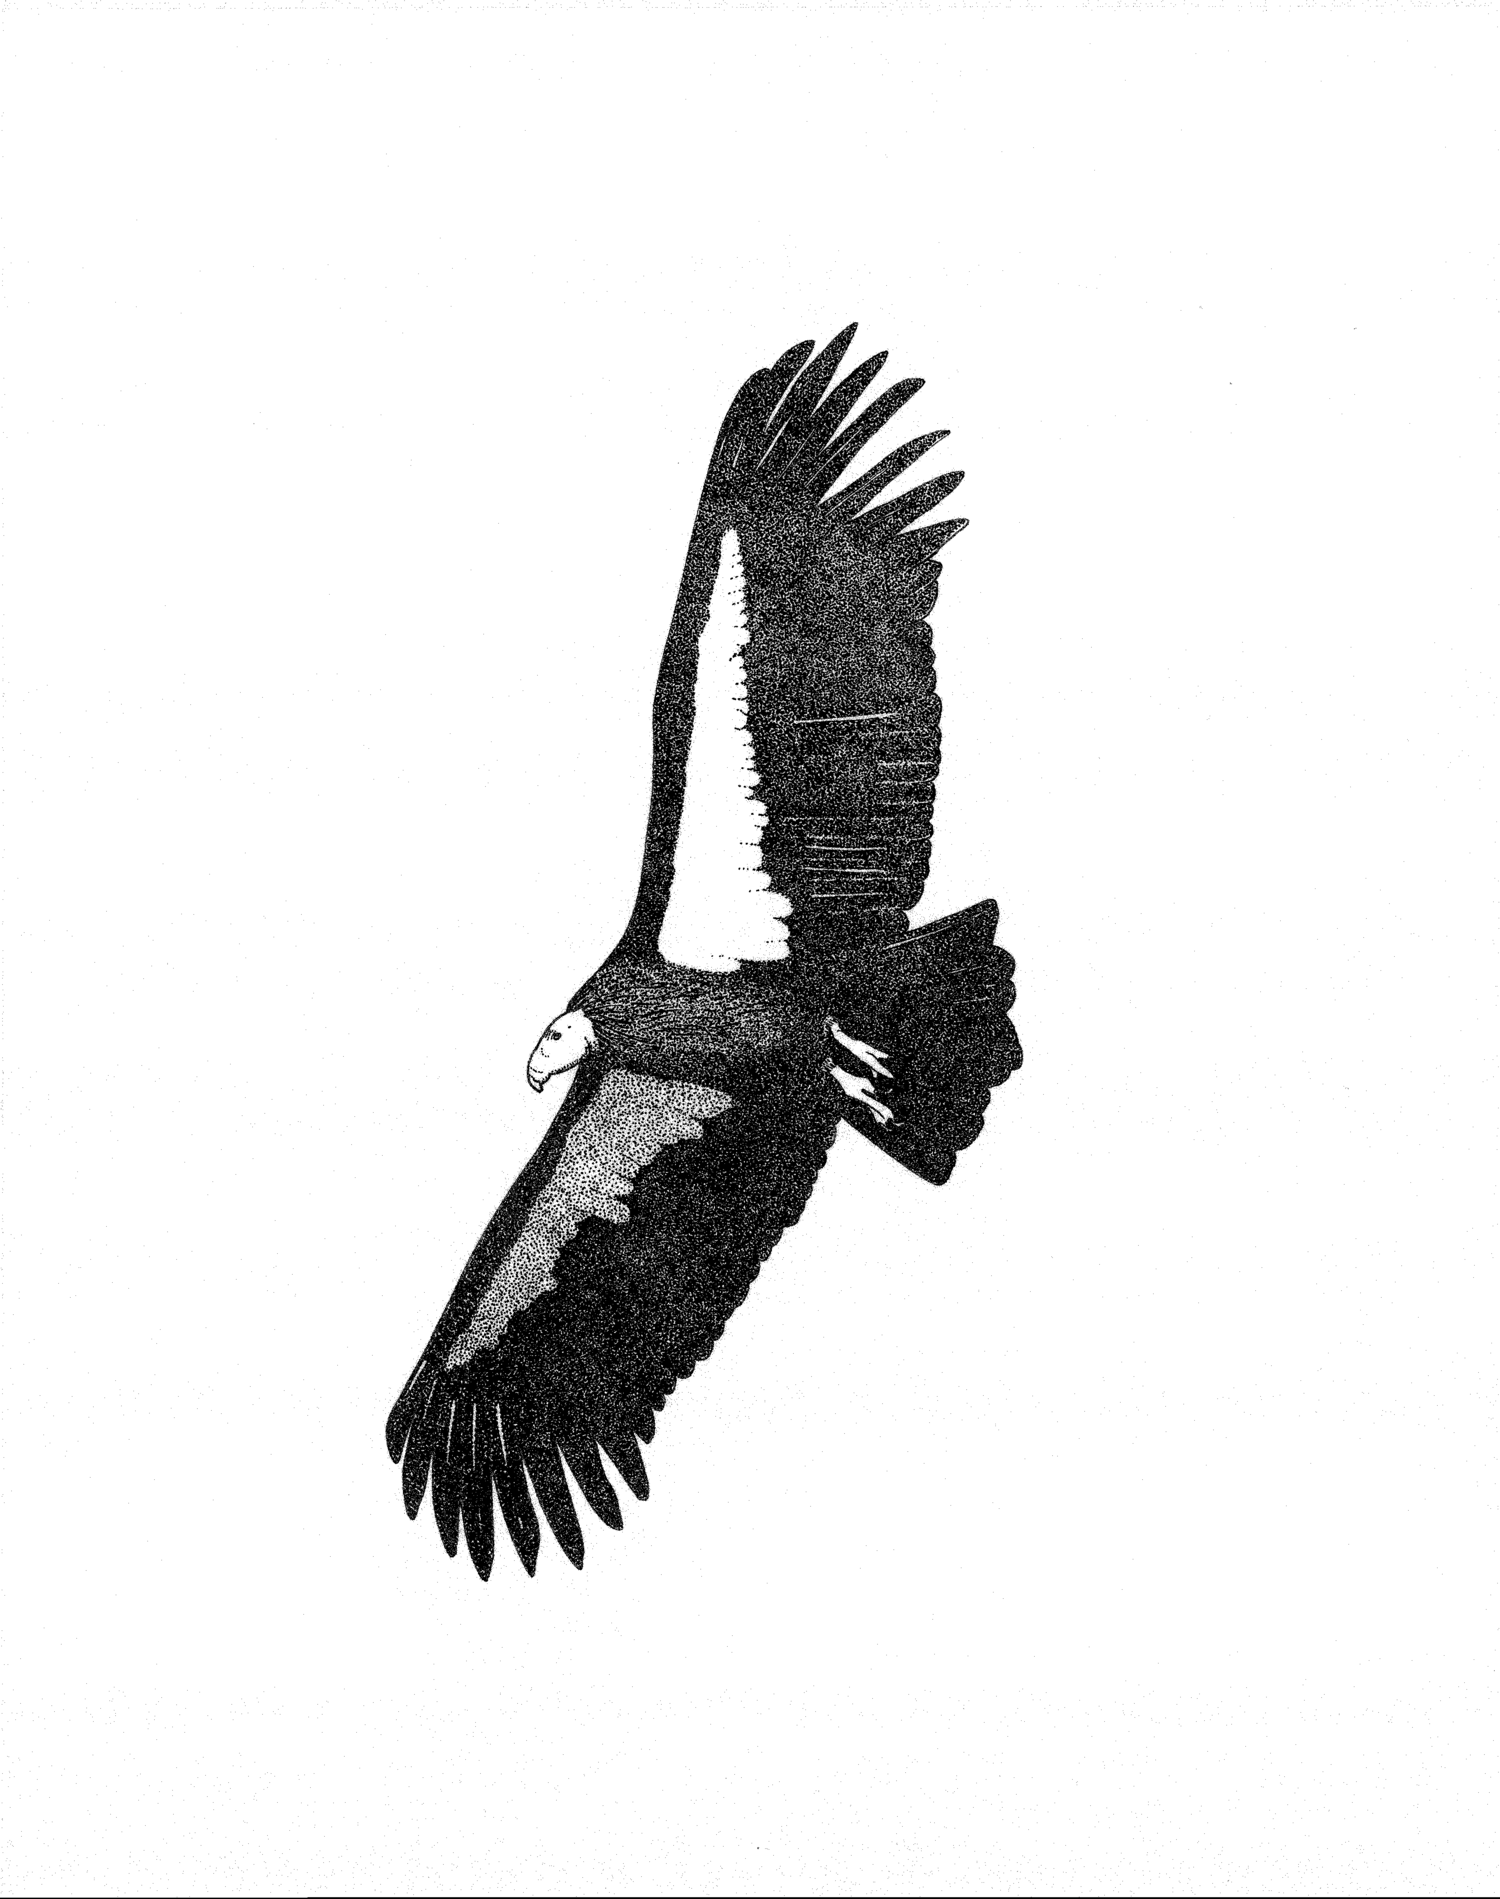 California Condor (Gymnogyps californianus)